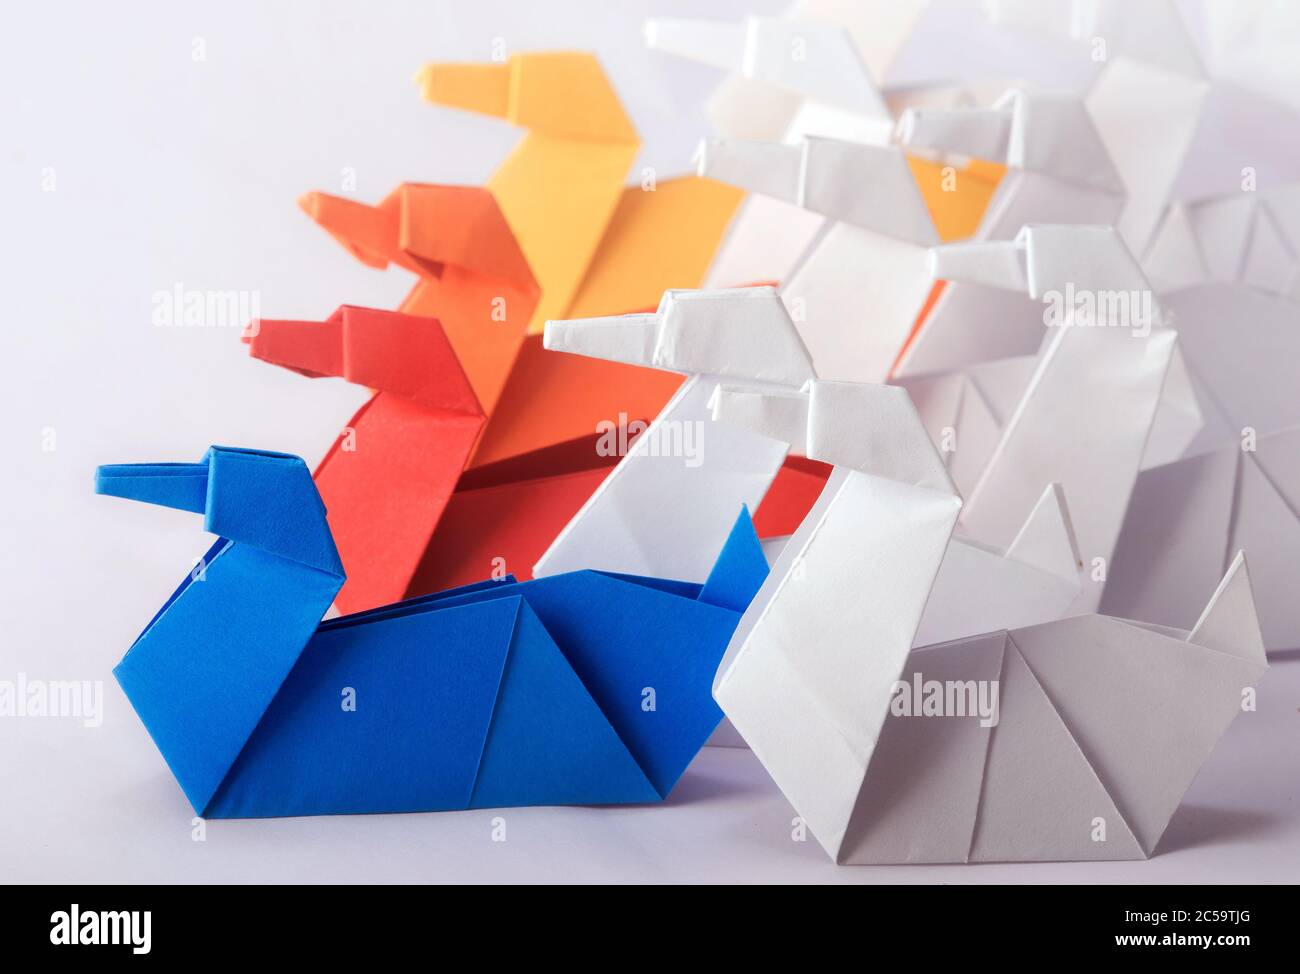 Concetto di lavoro di gruppo che utilizza diversi tipi di Swan di carta Origami. Raggiungere gli obiettivi attraverso gli sforzi collettivi di un team Foto Stock